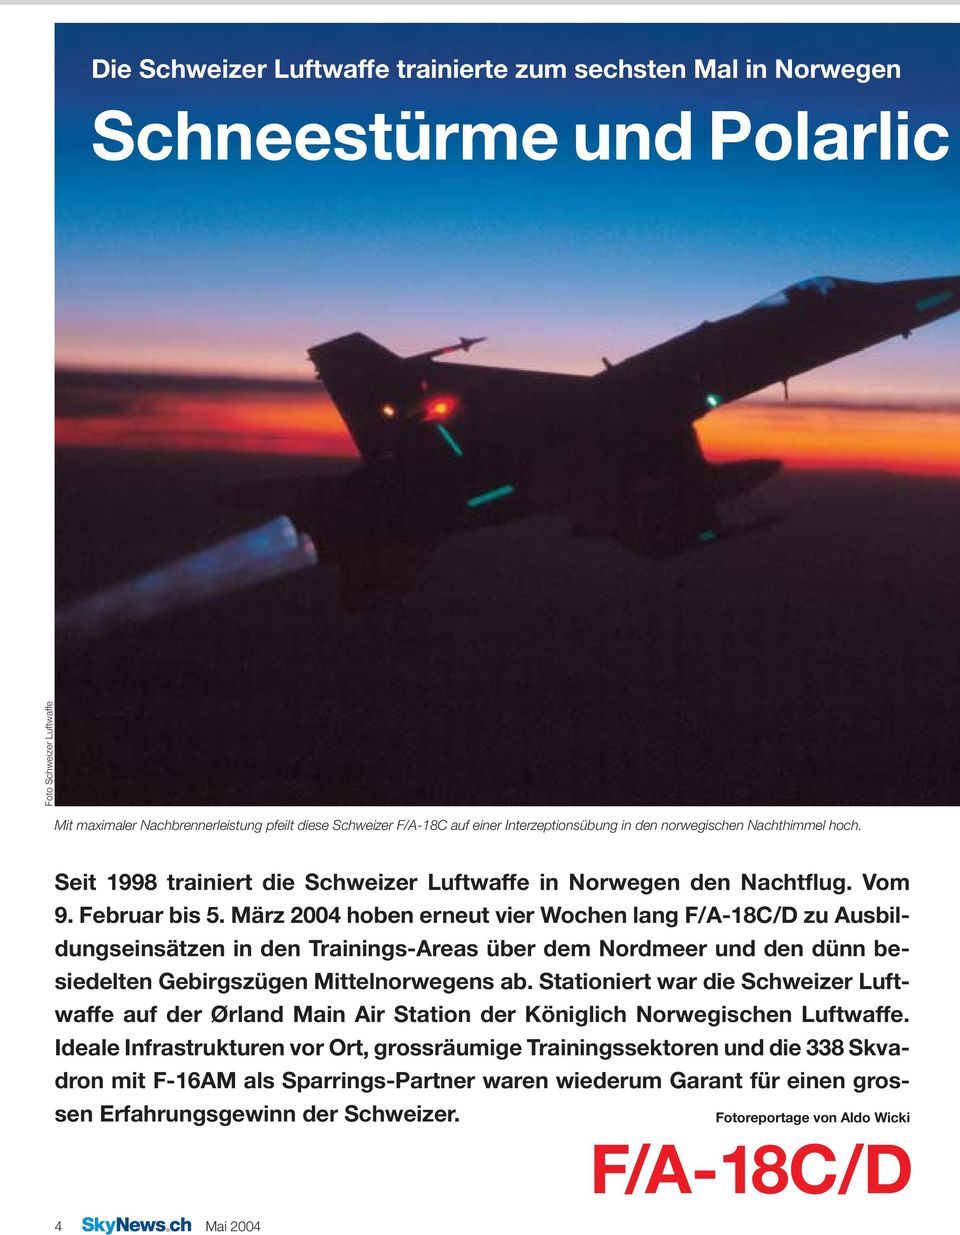 März 2004 hoben erneut vier Wochen lang F/A-18C/D zu Ausbildungseinsätzen in den Trainings-Areas über dem Nordmeer und den dünn besiedelten Gebirgszügen Mittelnorwegens ab.